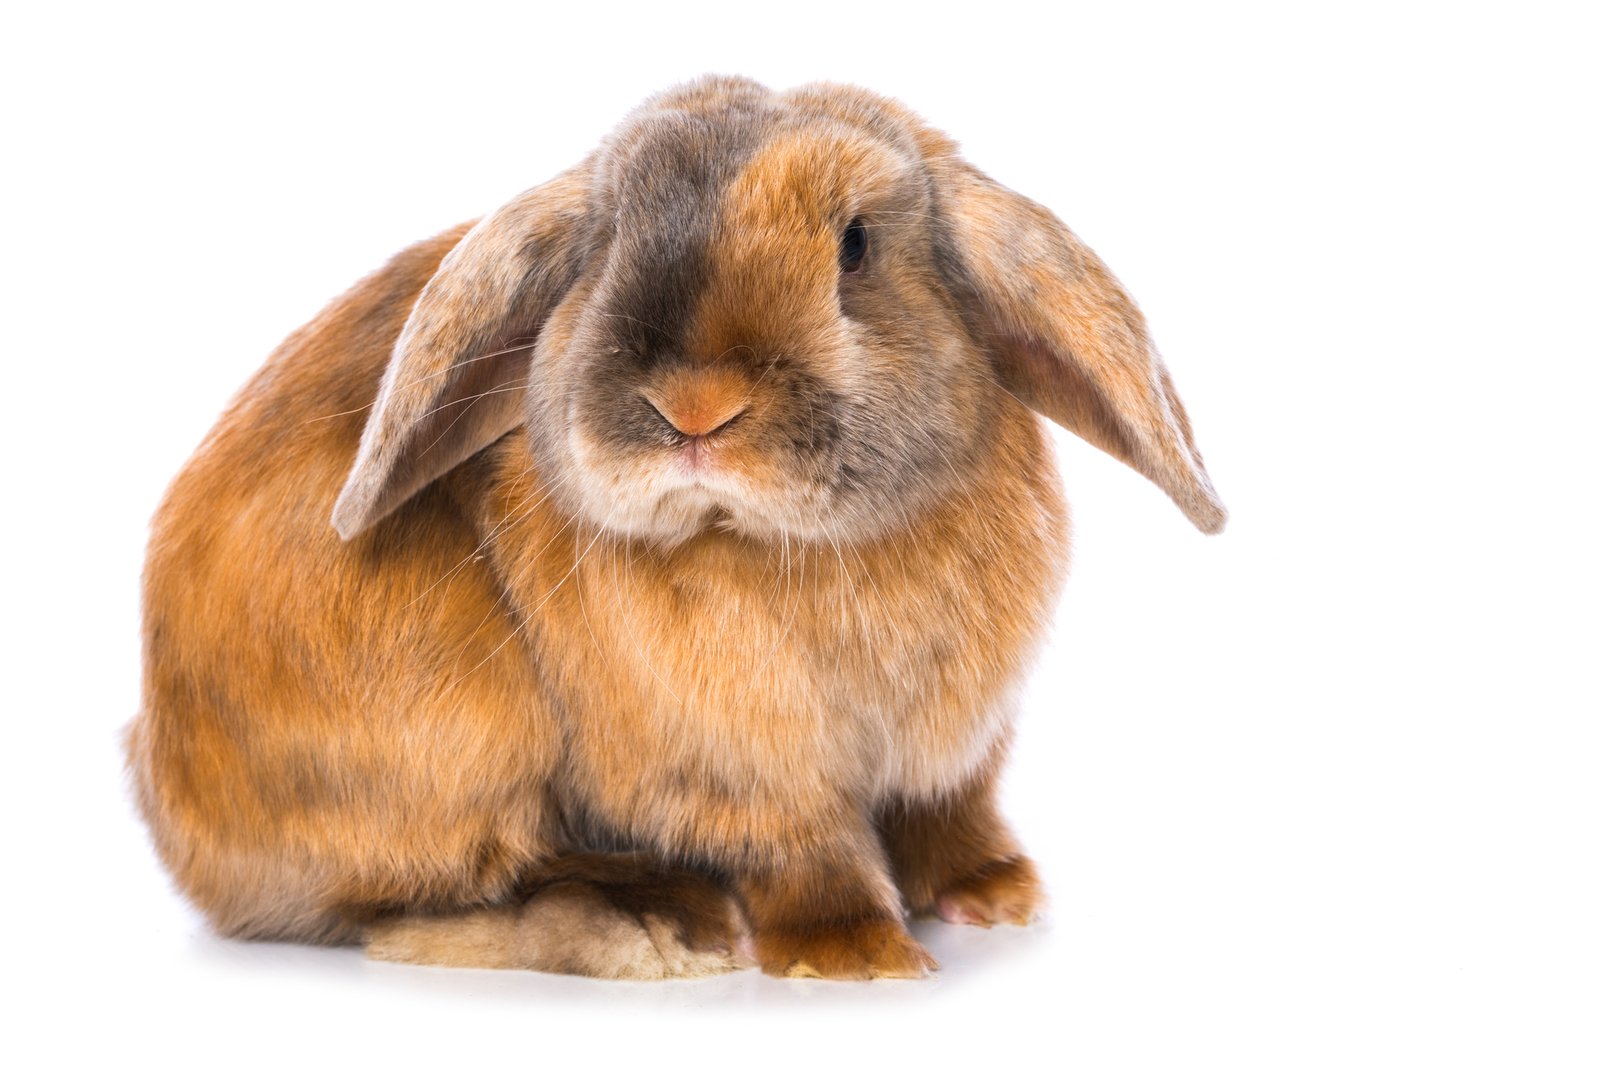 A Mini Satin rabbit breed